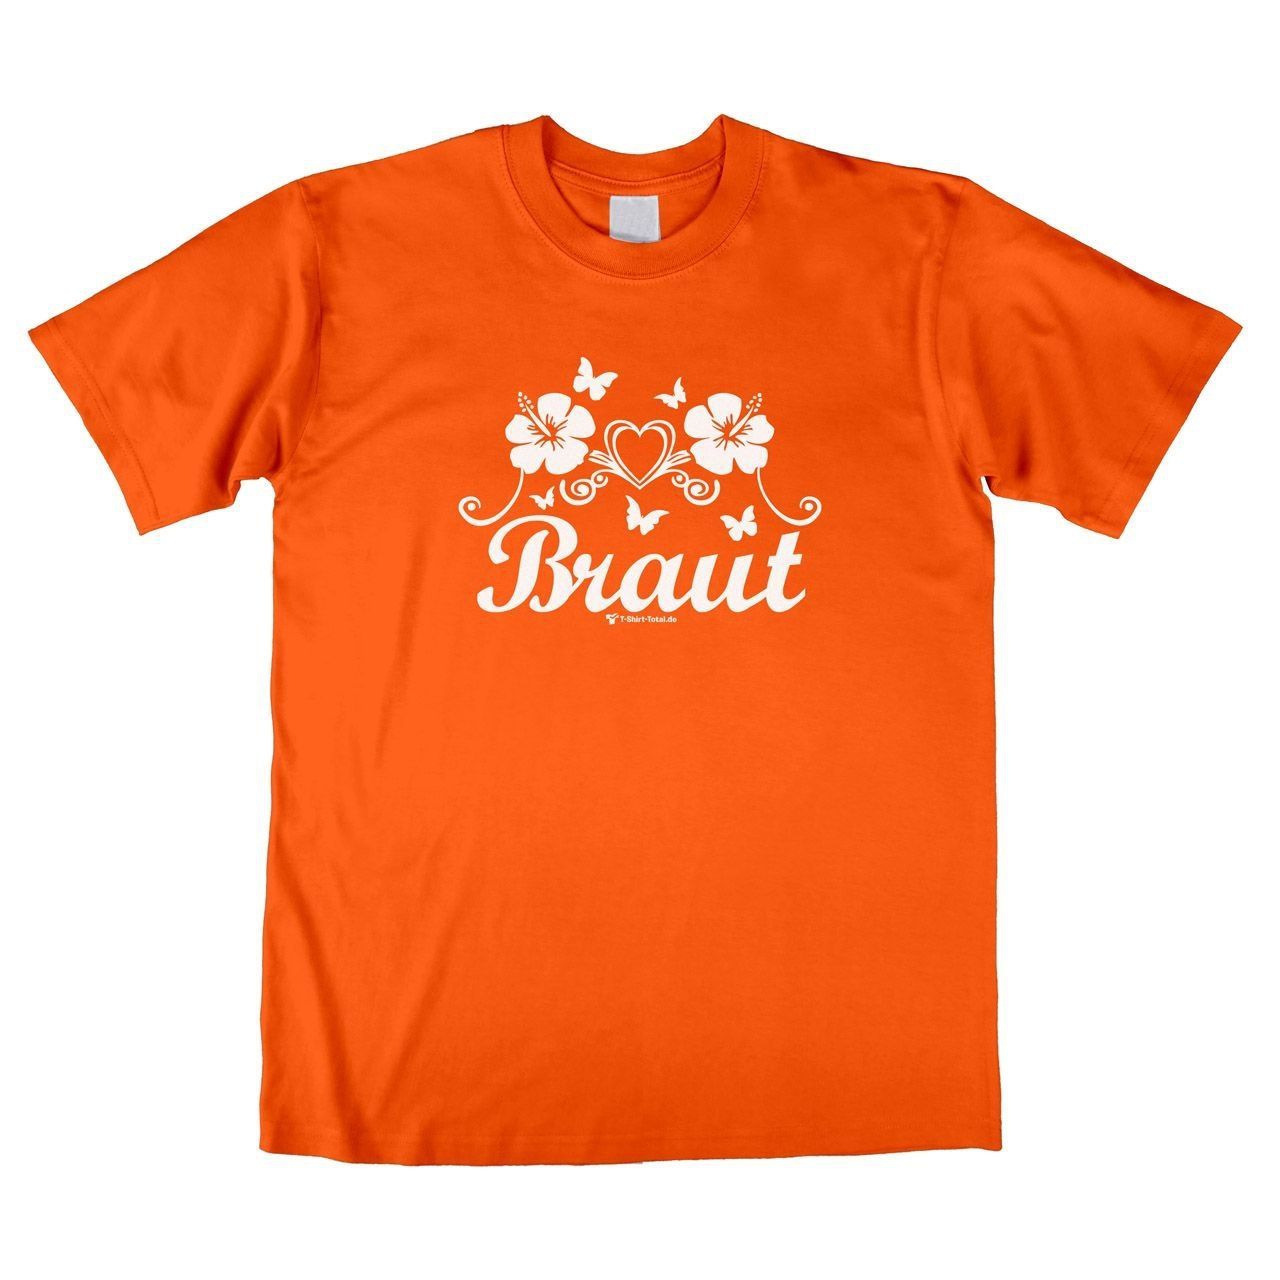 Die Braut Unisex T-Shirt orange Small